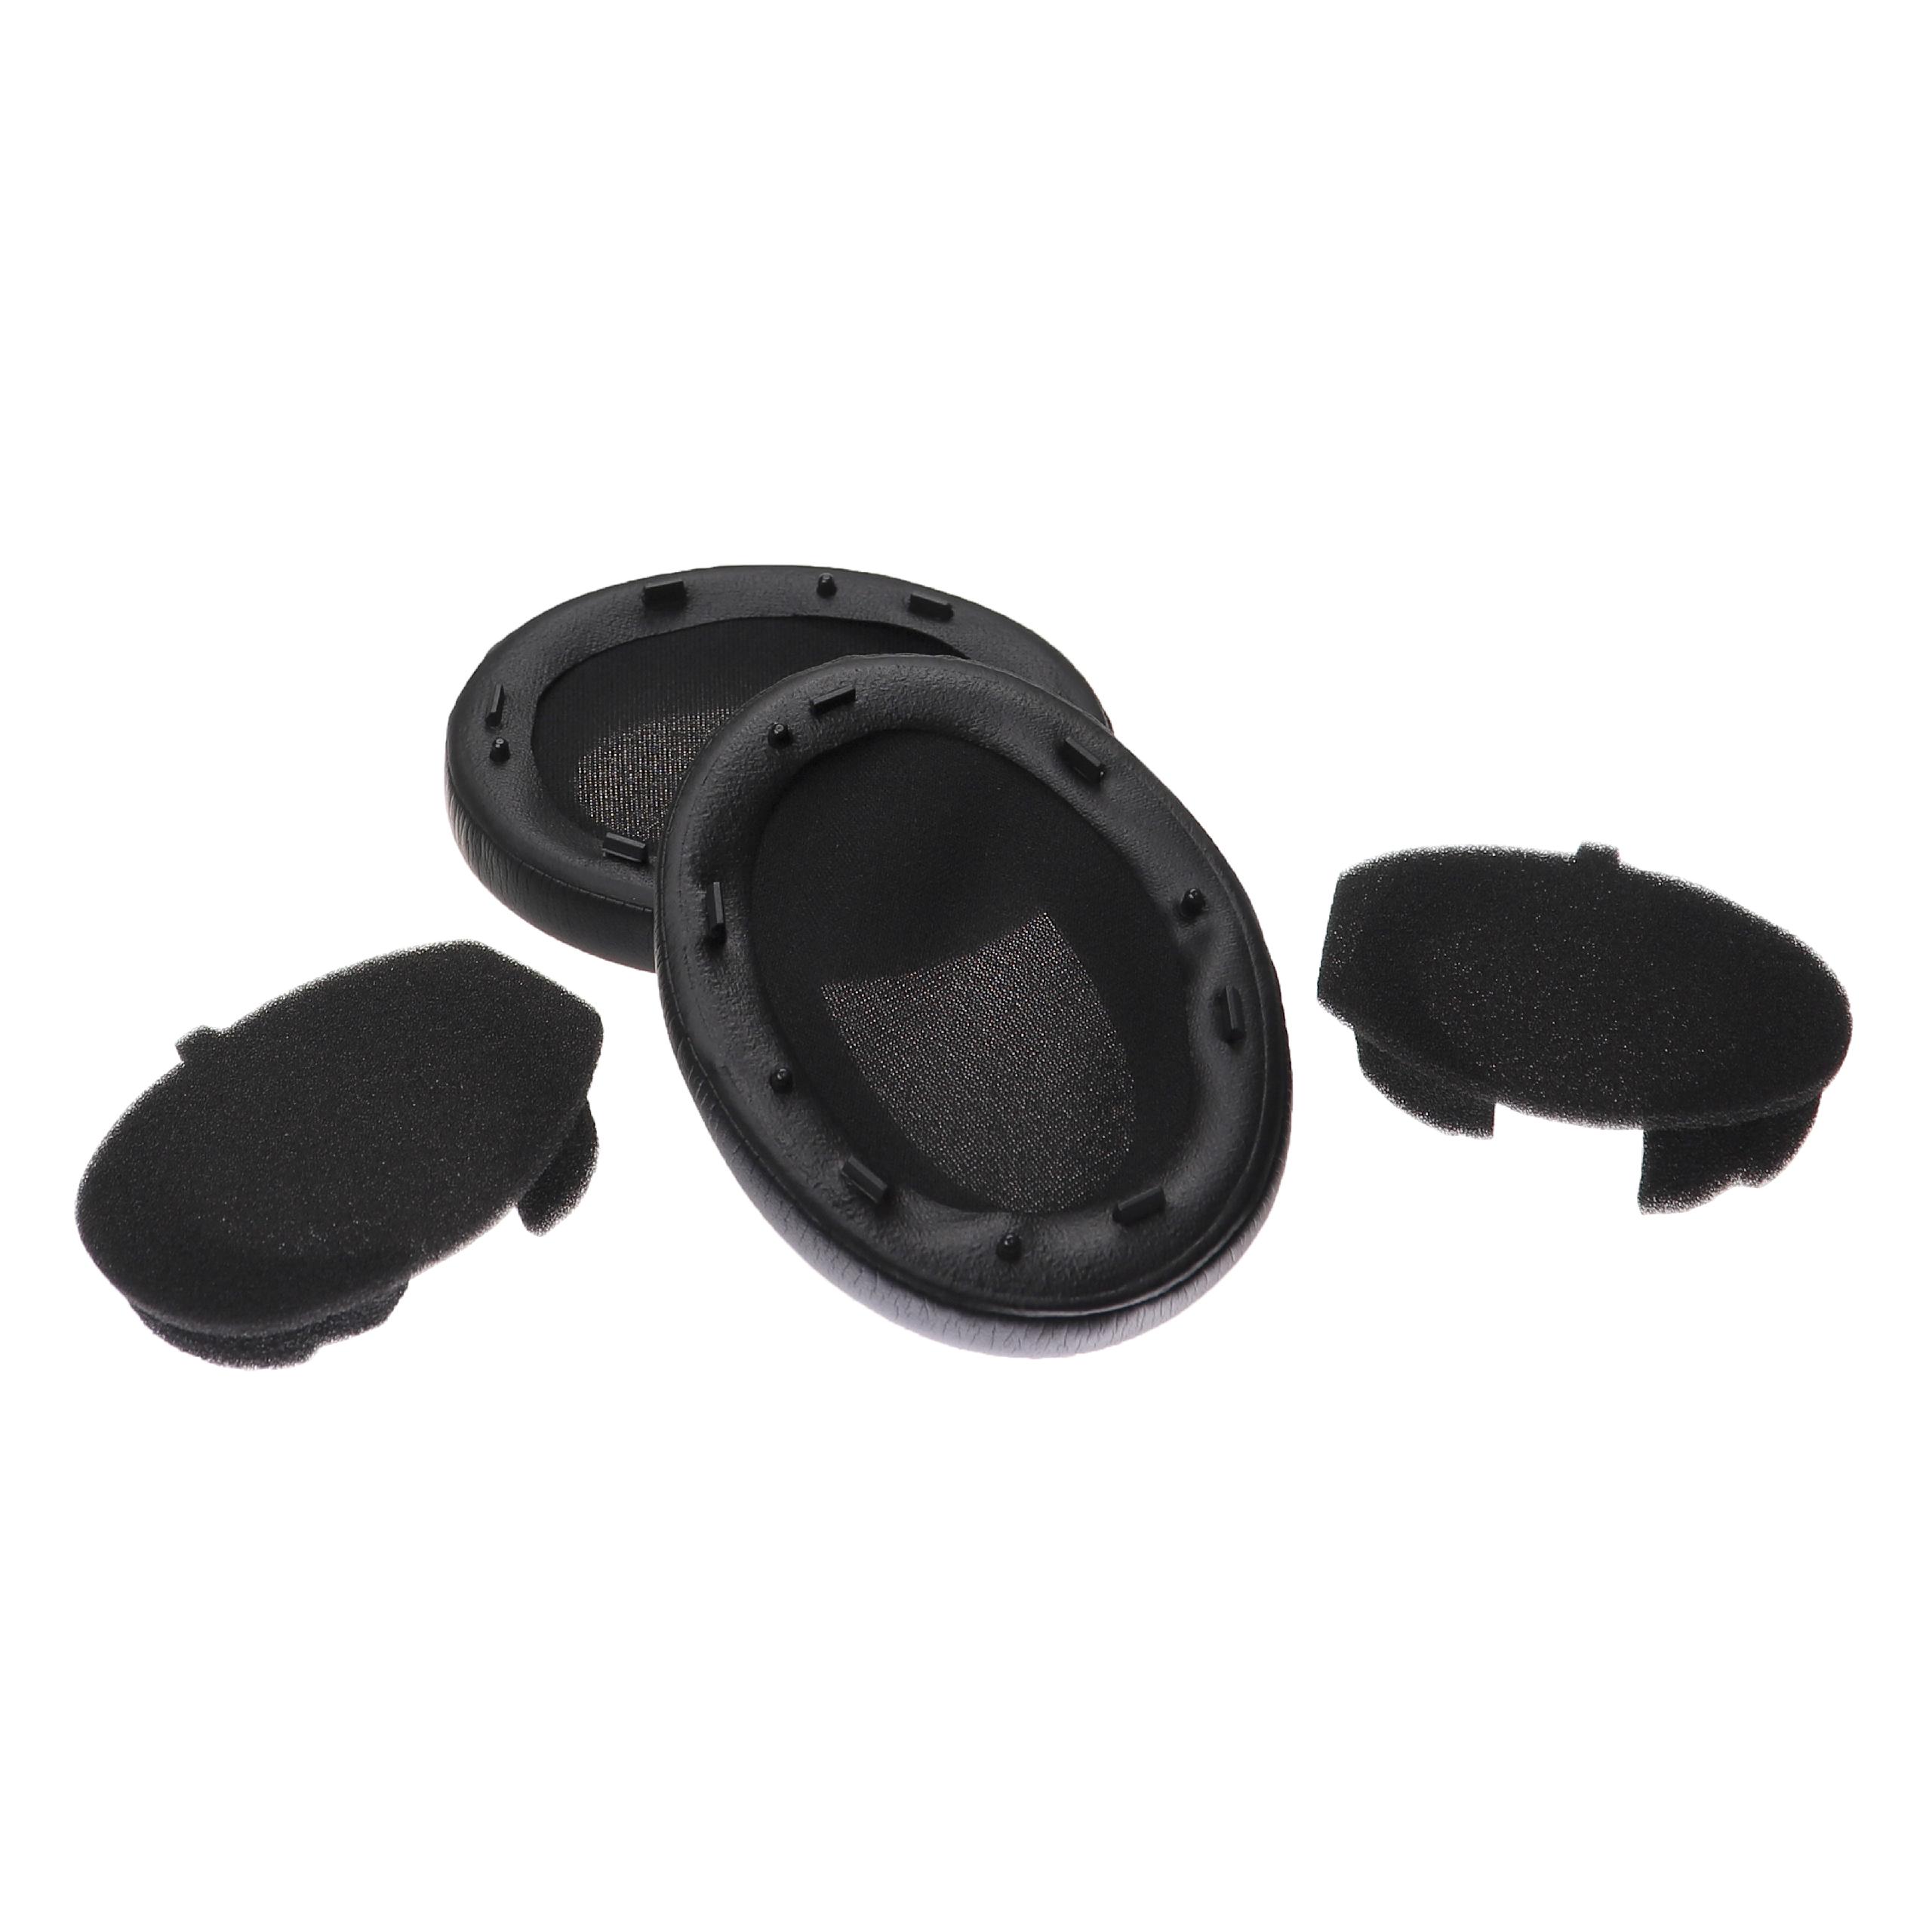 Poduszki do słuchawek Sony WH-1000XM3 - pady z pianką Memory, miękkie, grub. 28 mm, czarny